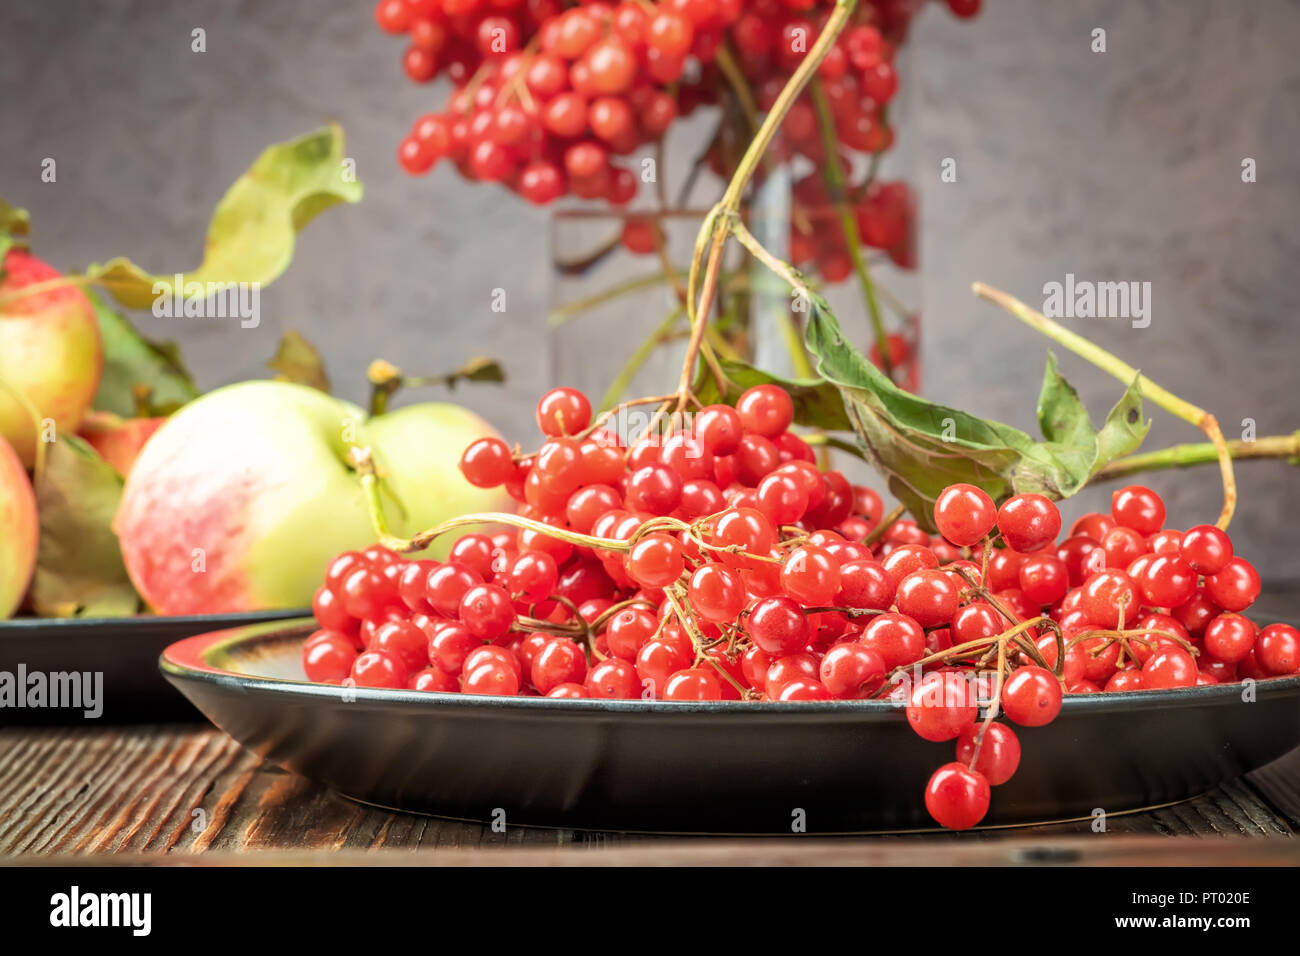 Noch immer leben Beeren eines Viburnum und Garten saisonal Äpfel in Platten auf hölzernen Tisch. Herbst Konzept Ernährung, Landwirtschaft, Ernte, Kochen Stockfoto